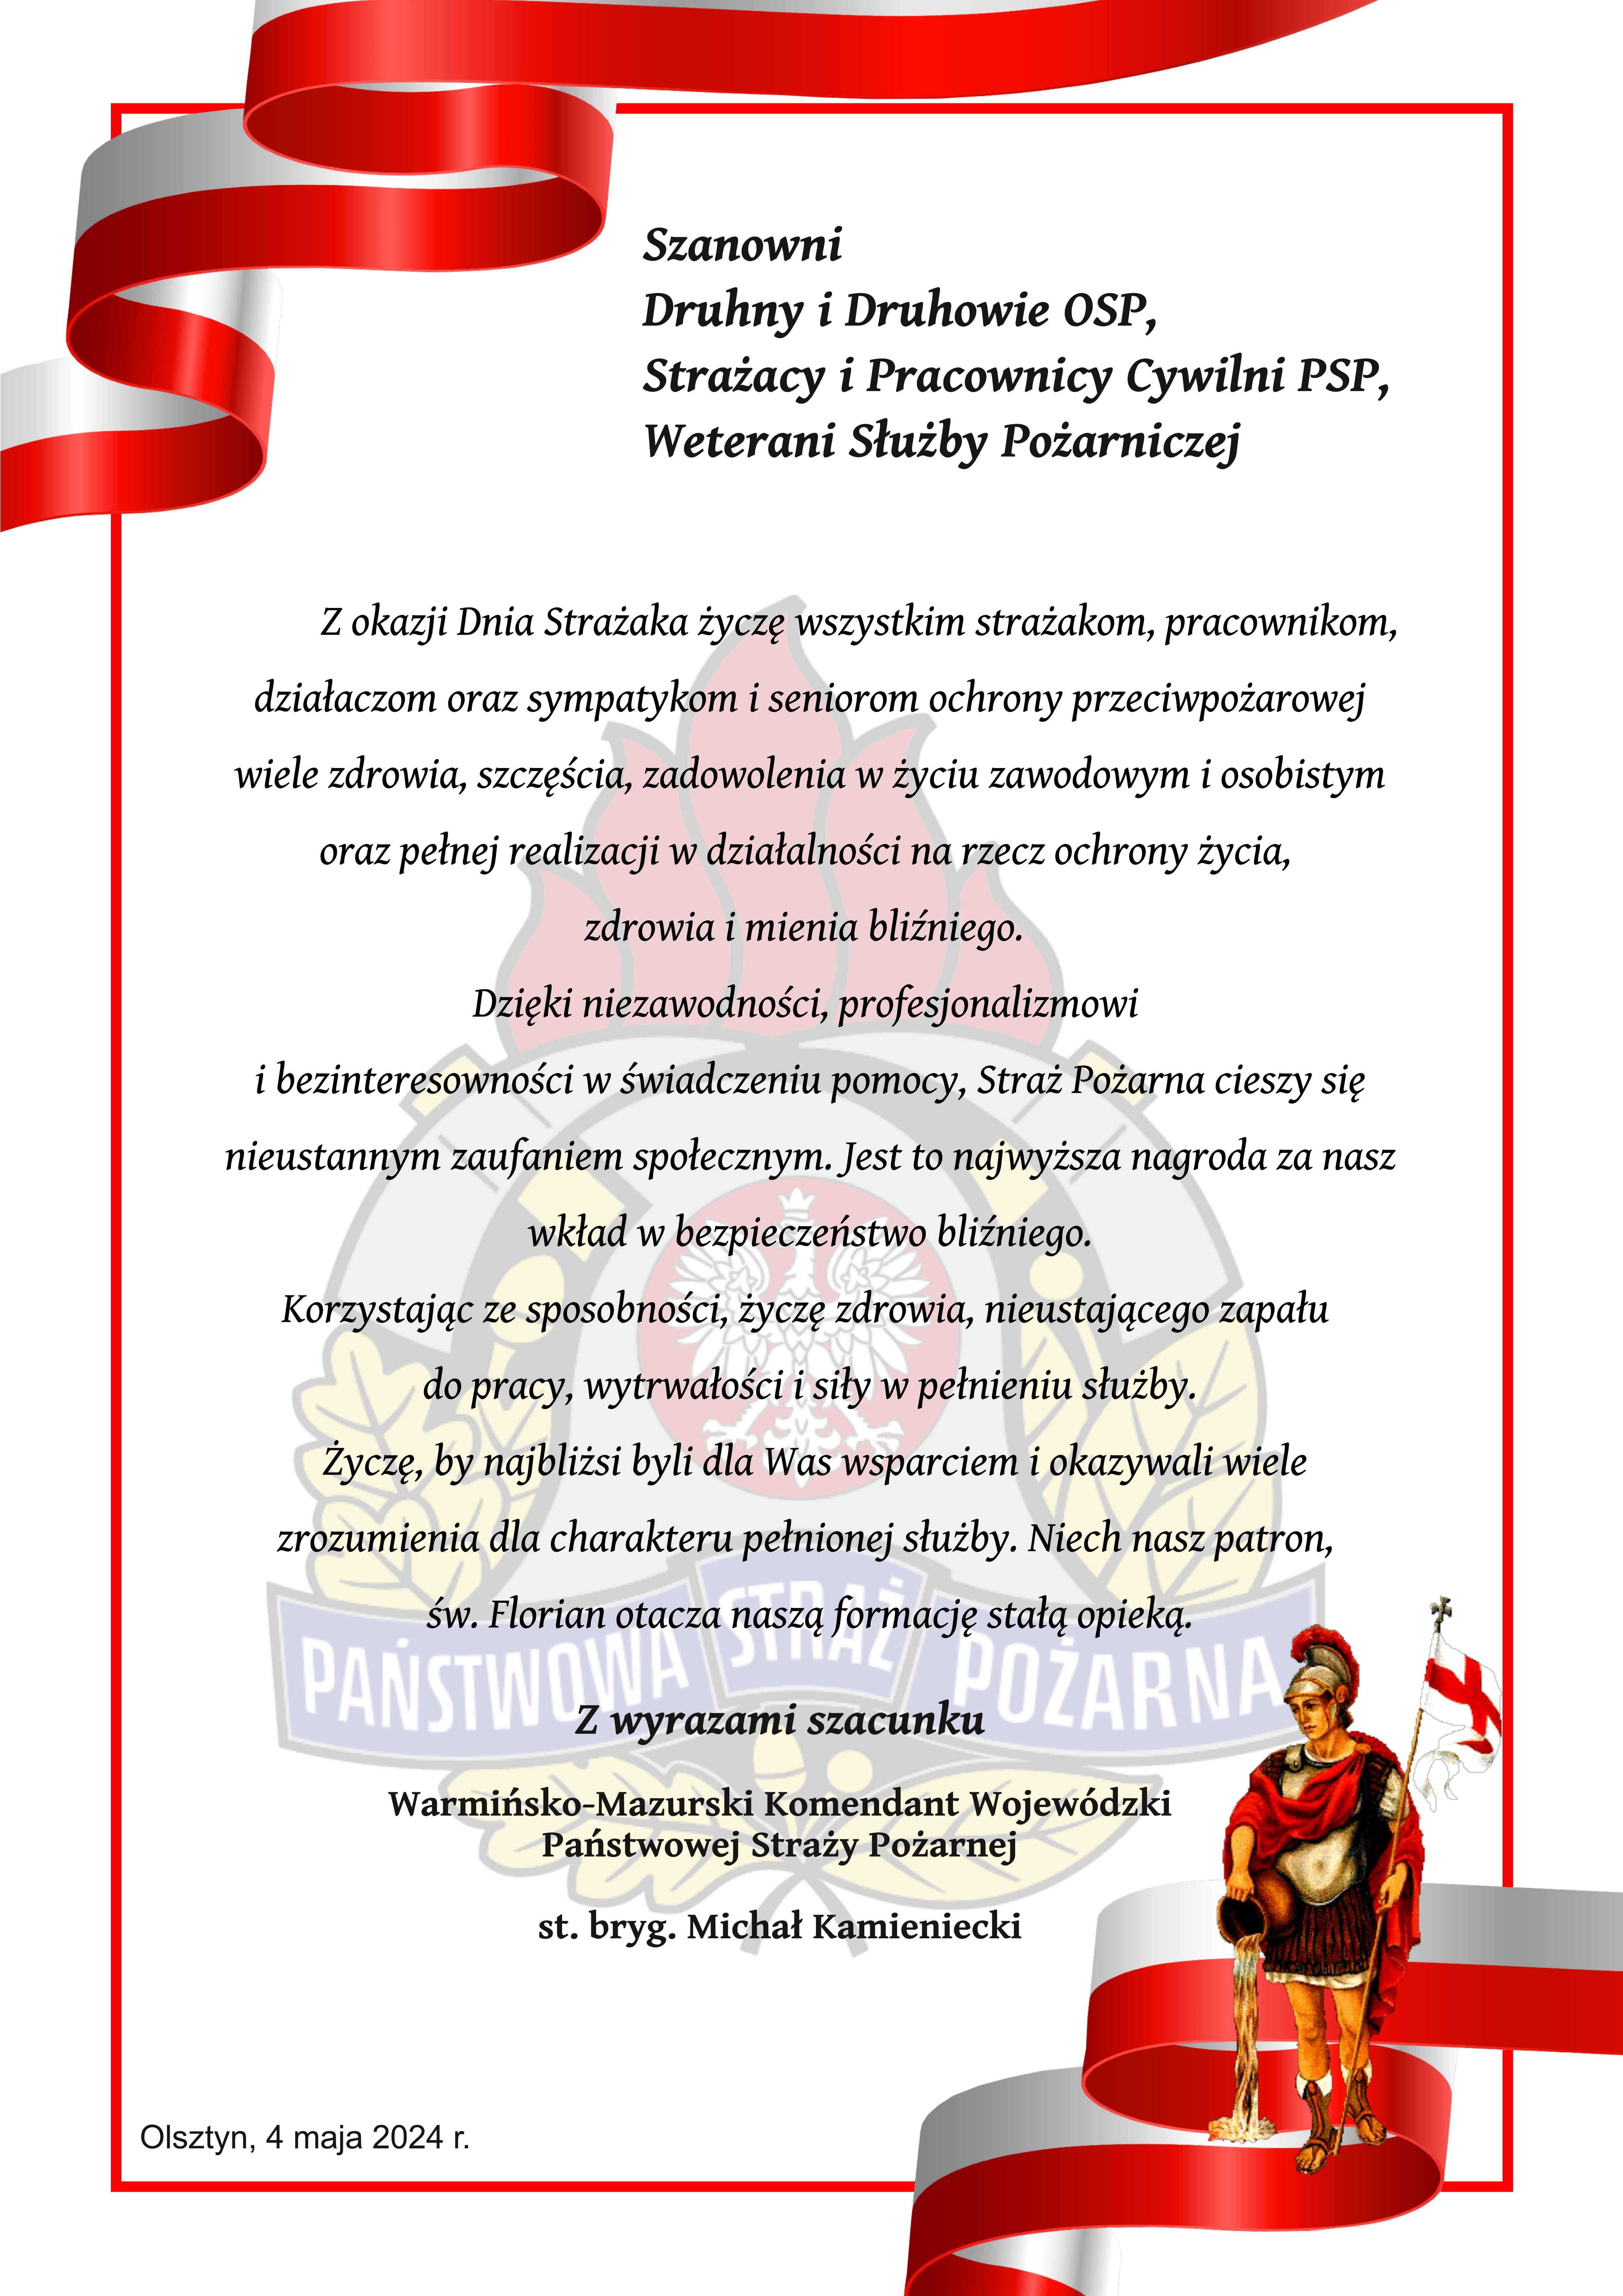 Życzenia Warmińsko-Mazurskiego Komendanta Wojewódzkiego Państwowej Straży Pożarnej z okazji Dnia Strażaka